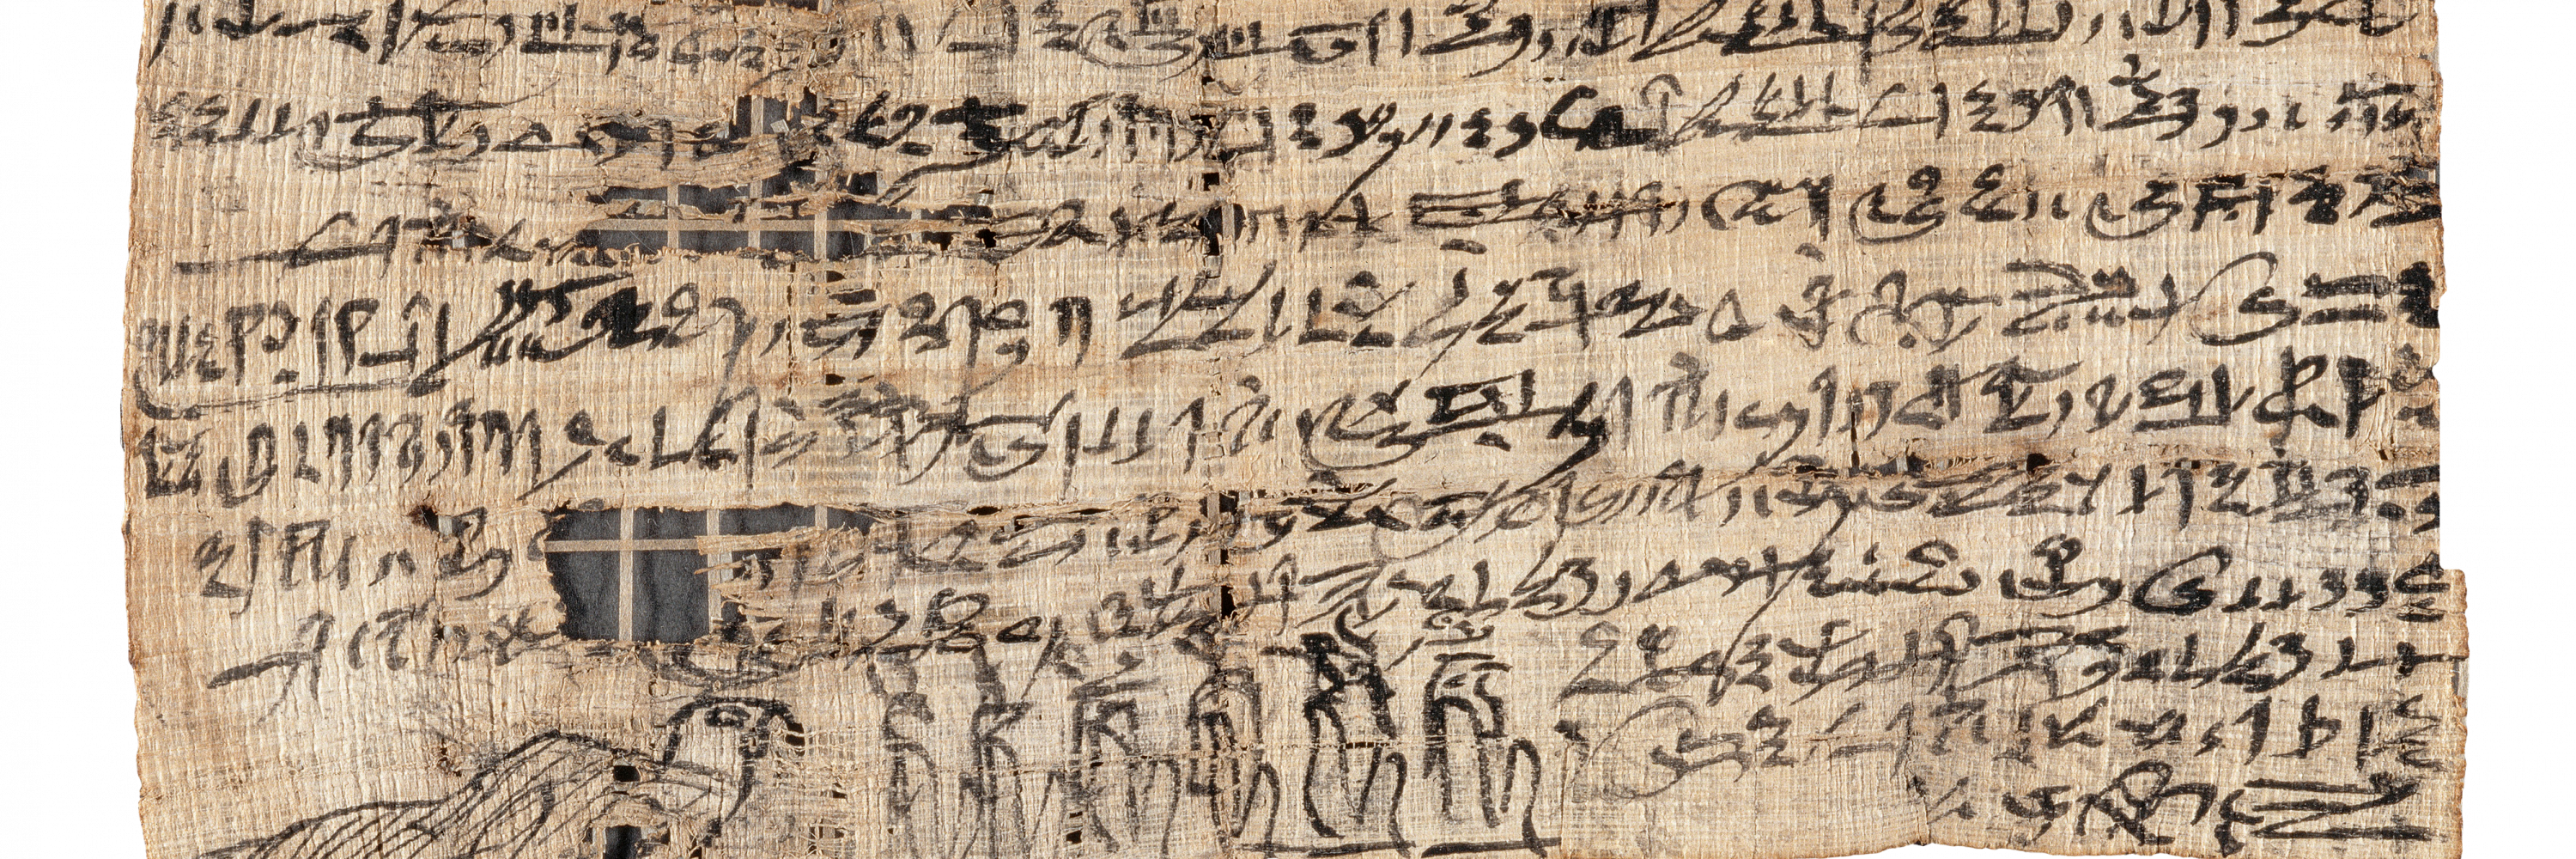 Dossier : Les écritures dans l’Égypte et la Nubie antiques